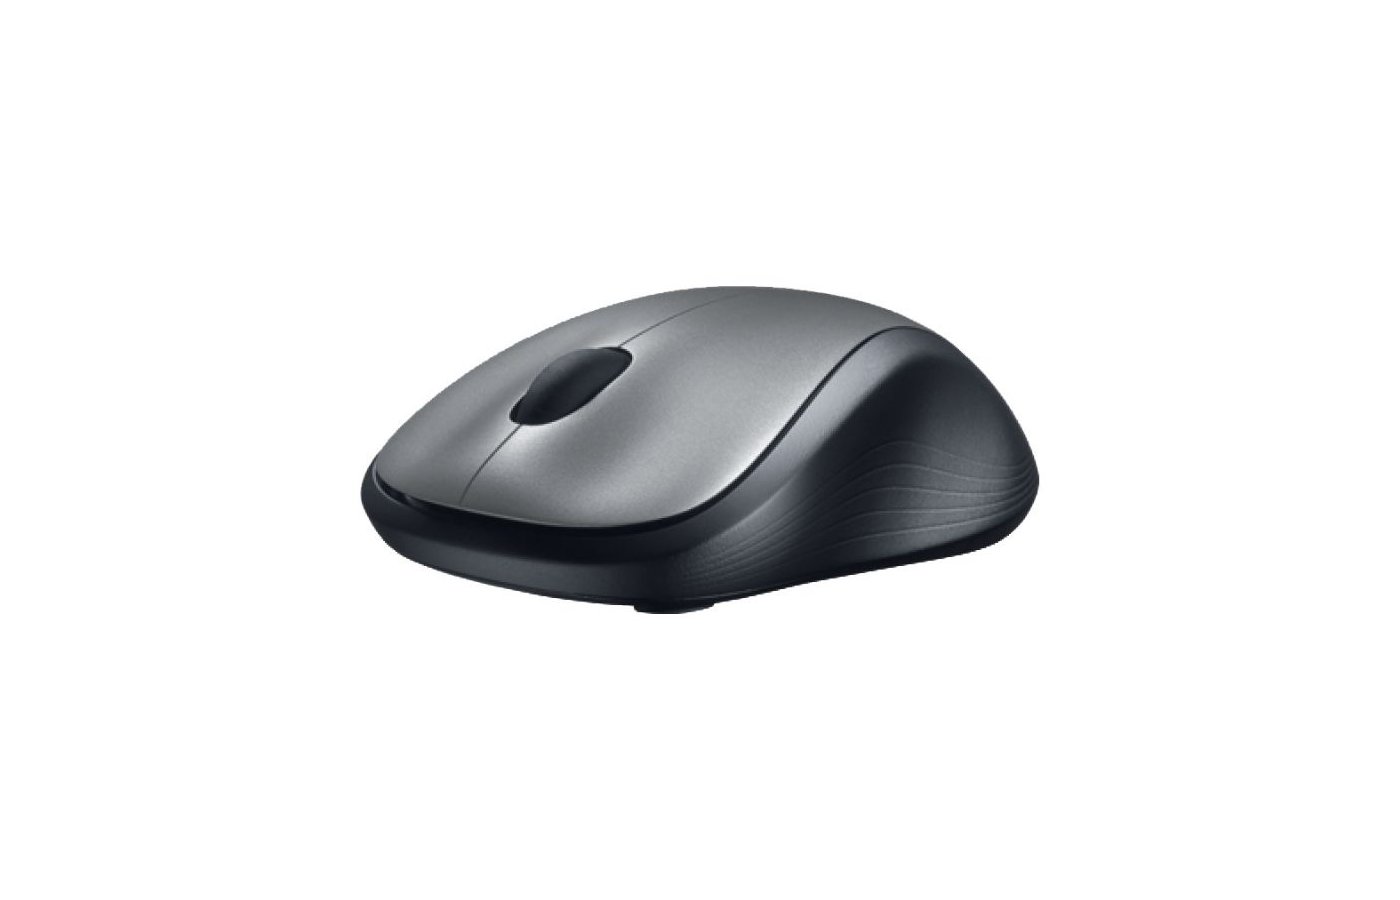 Беспроводная мышь m310. Мышь Logitech m310 Black USB. Логитеч мышка беспроводная офисная. Мышь беспроводная для ноутбука Лоджитек цветная. Мышь Omiz Bluetooth Card-sized Mouse Grey.